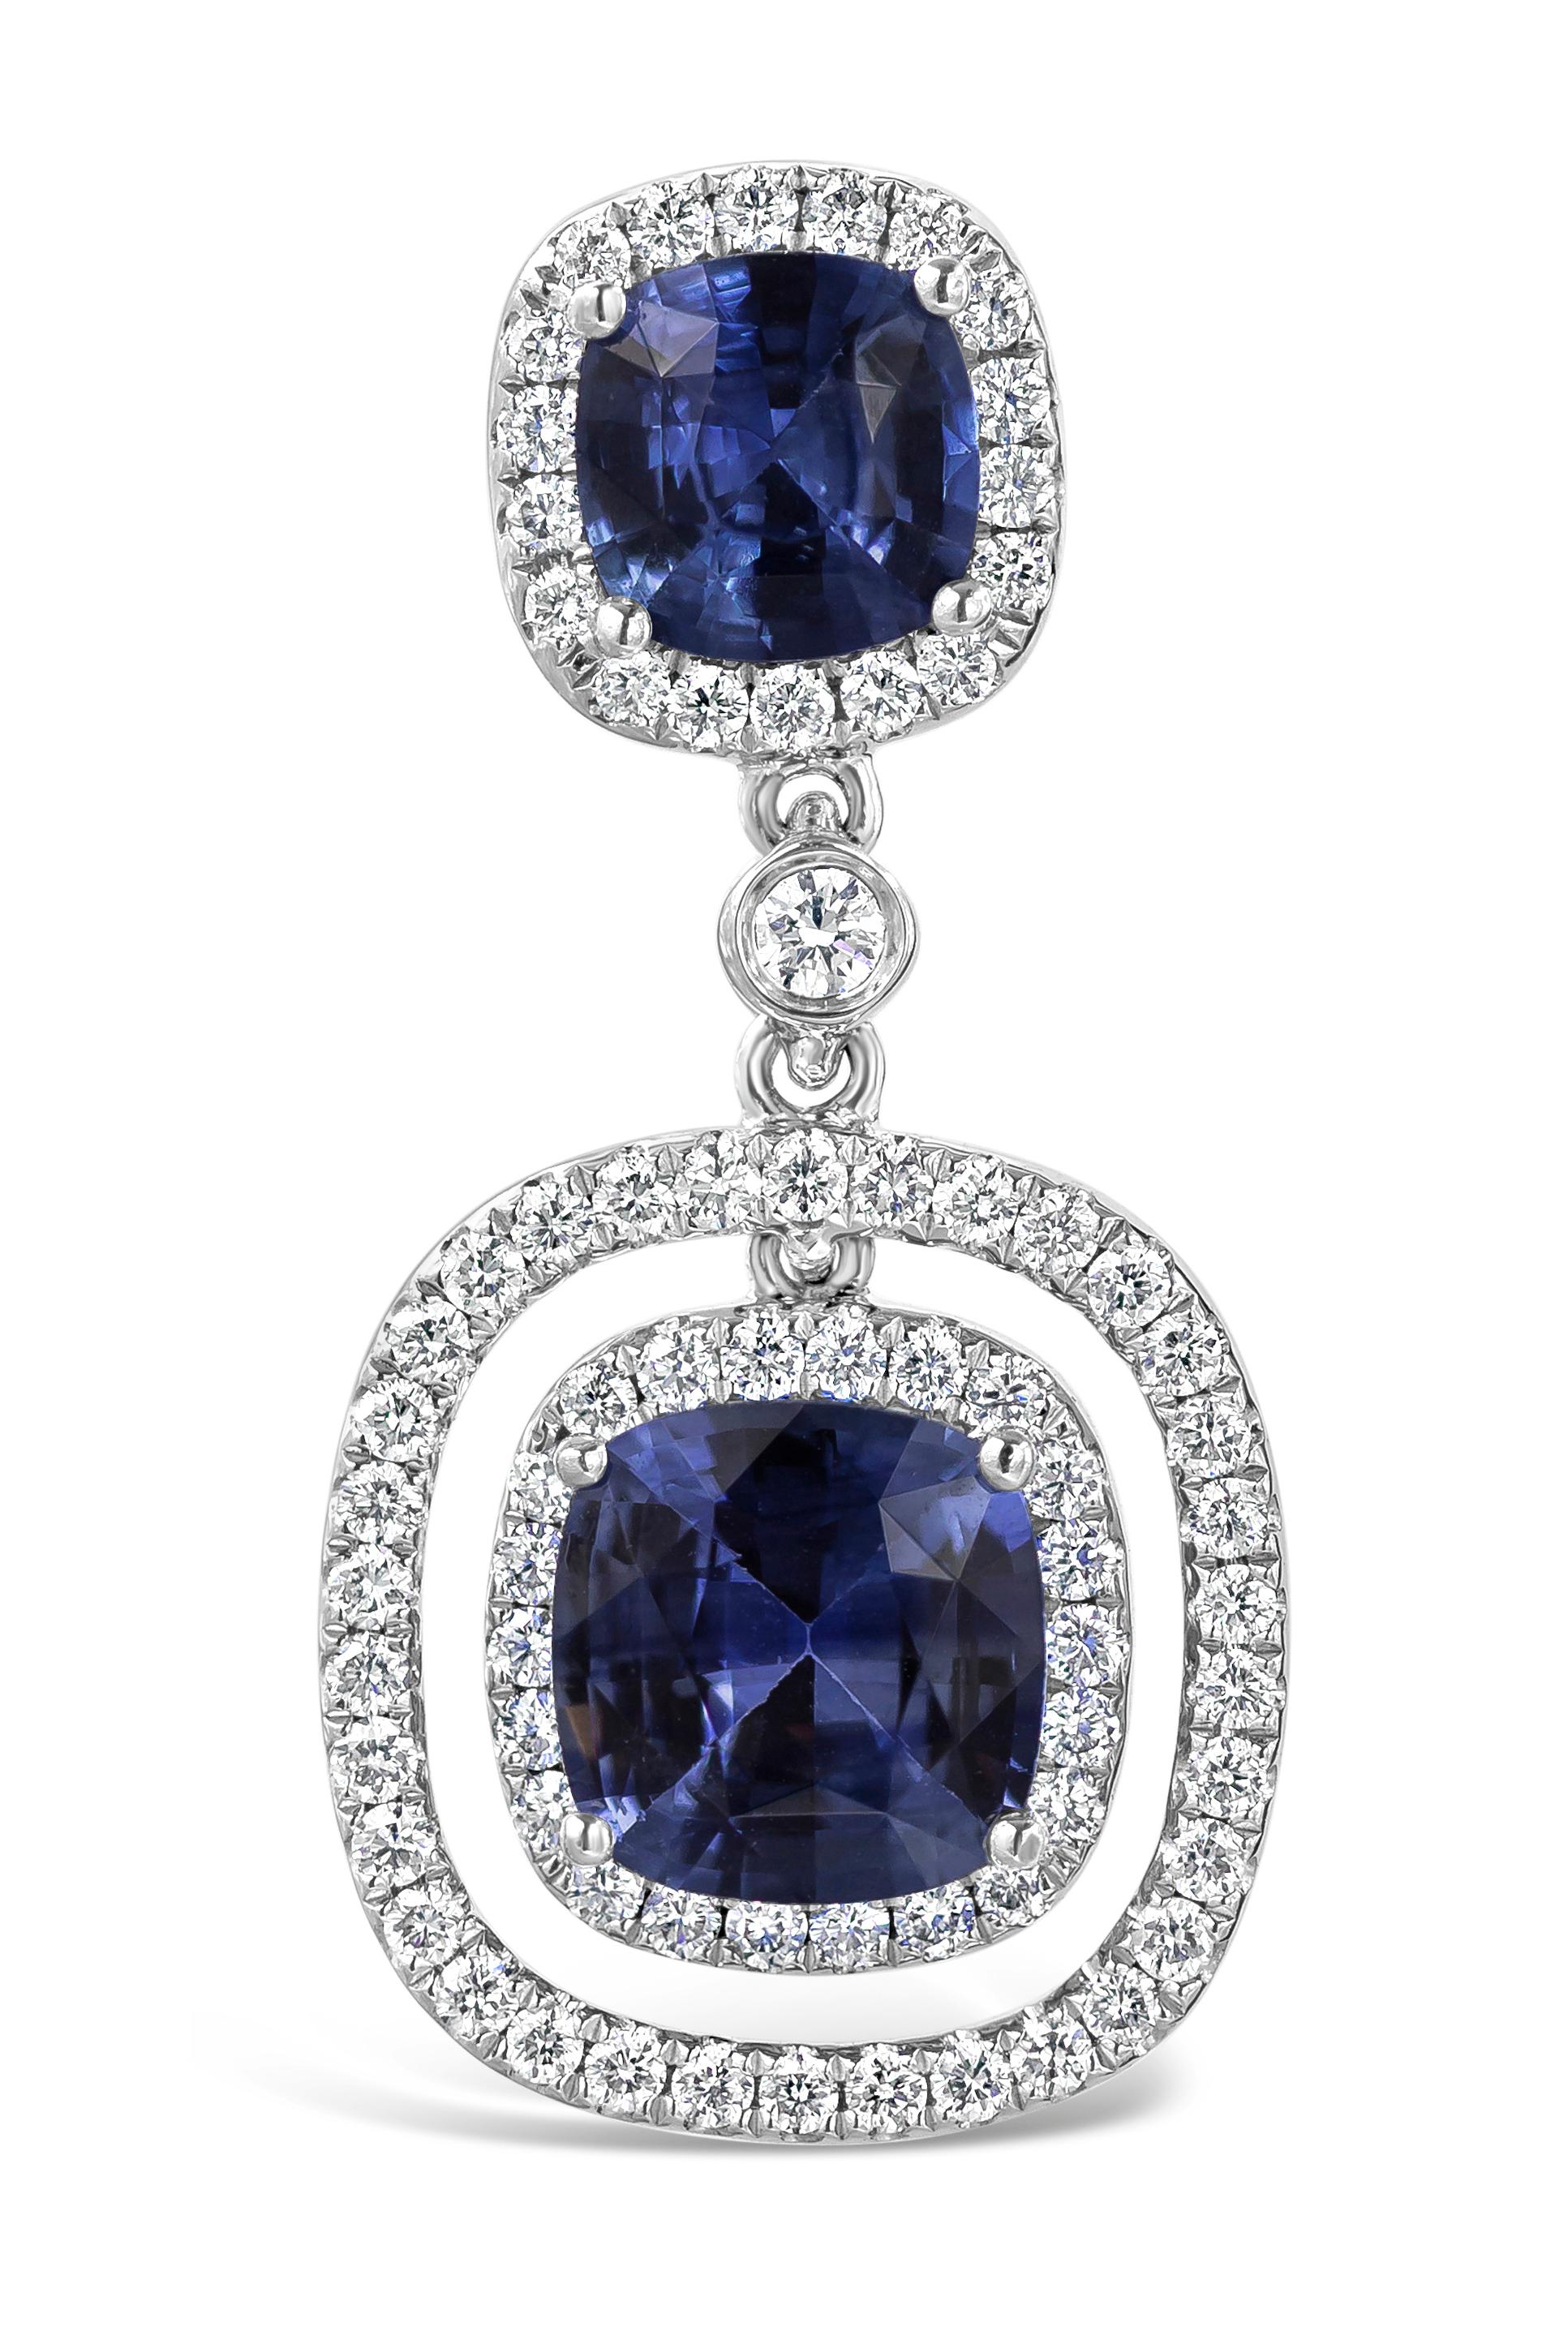 Ein atemberaubendes Paar Edelstein-Ohrringe mit vier blauen Saphiren im Kissenschliff in Vier-Pong-Fassung, umgeben von einem Halo aus runden Brillanten. Blaue Saphire wiegen insgesamt 3,96 Karat und weiße Diamanten wiegen insgesamt 0,76 Karat.